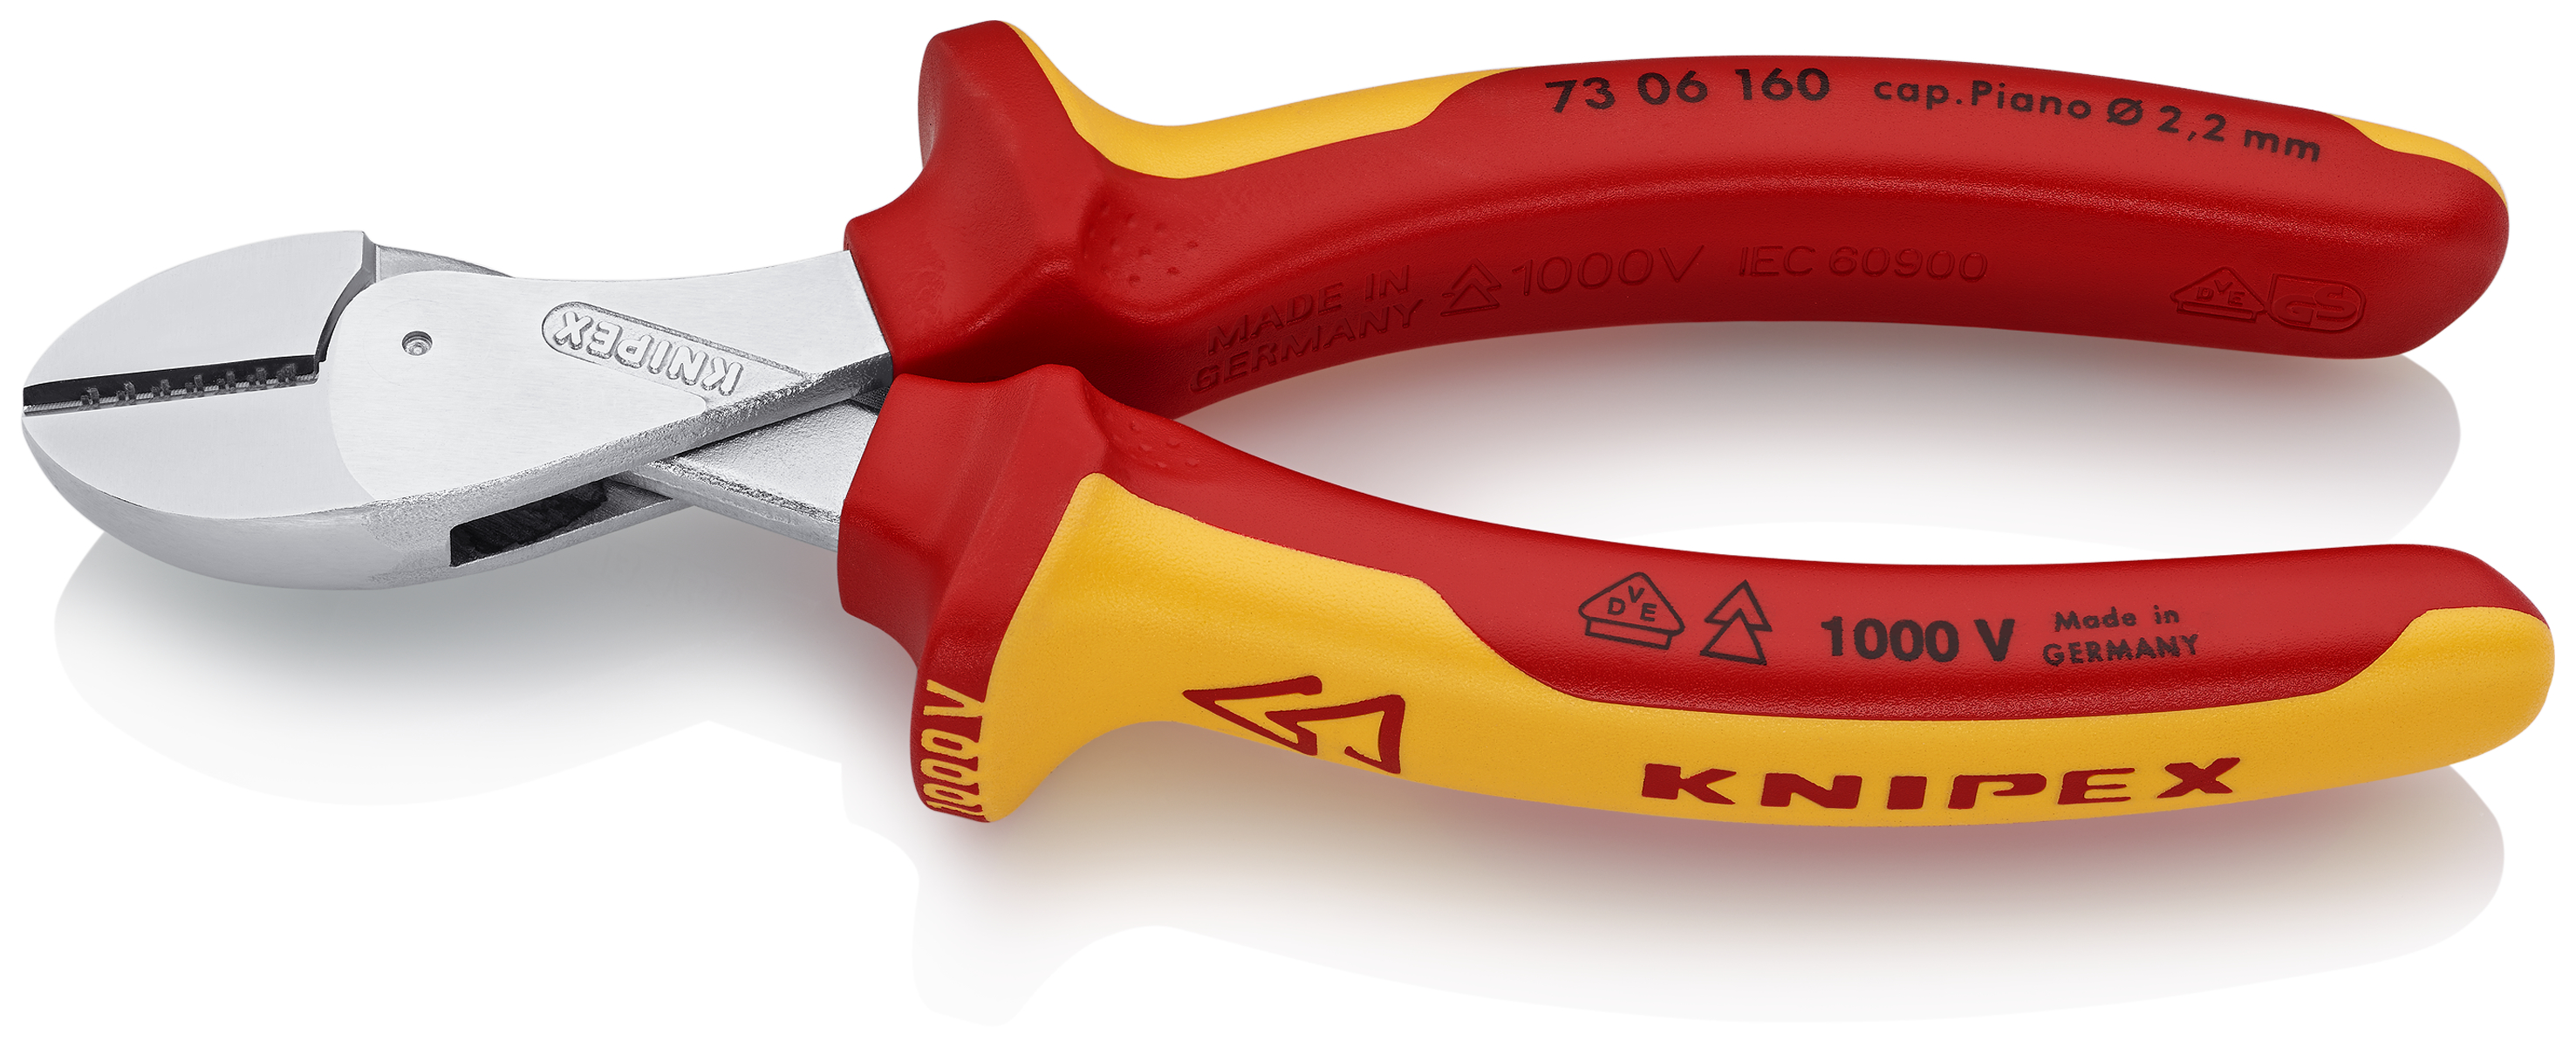 KNIPEX 73 06 160 CBdirekt / X-Cut® Werkzeug hochübersetzt für mm / | Garten Profi-Shop Sanitär 160 Kompakt-Seitenschneider